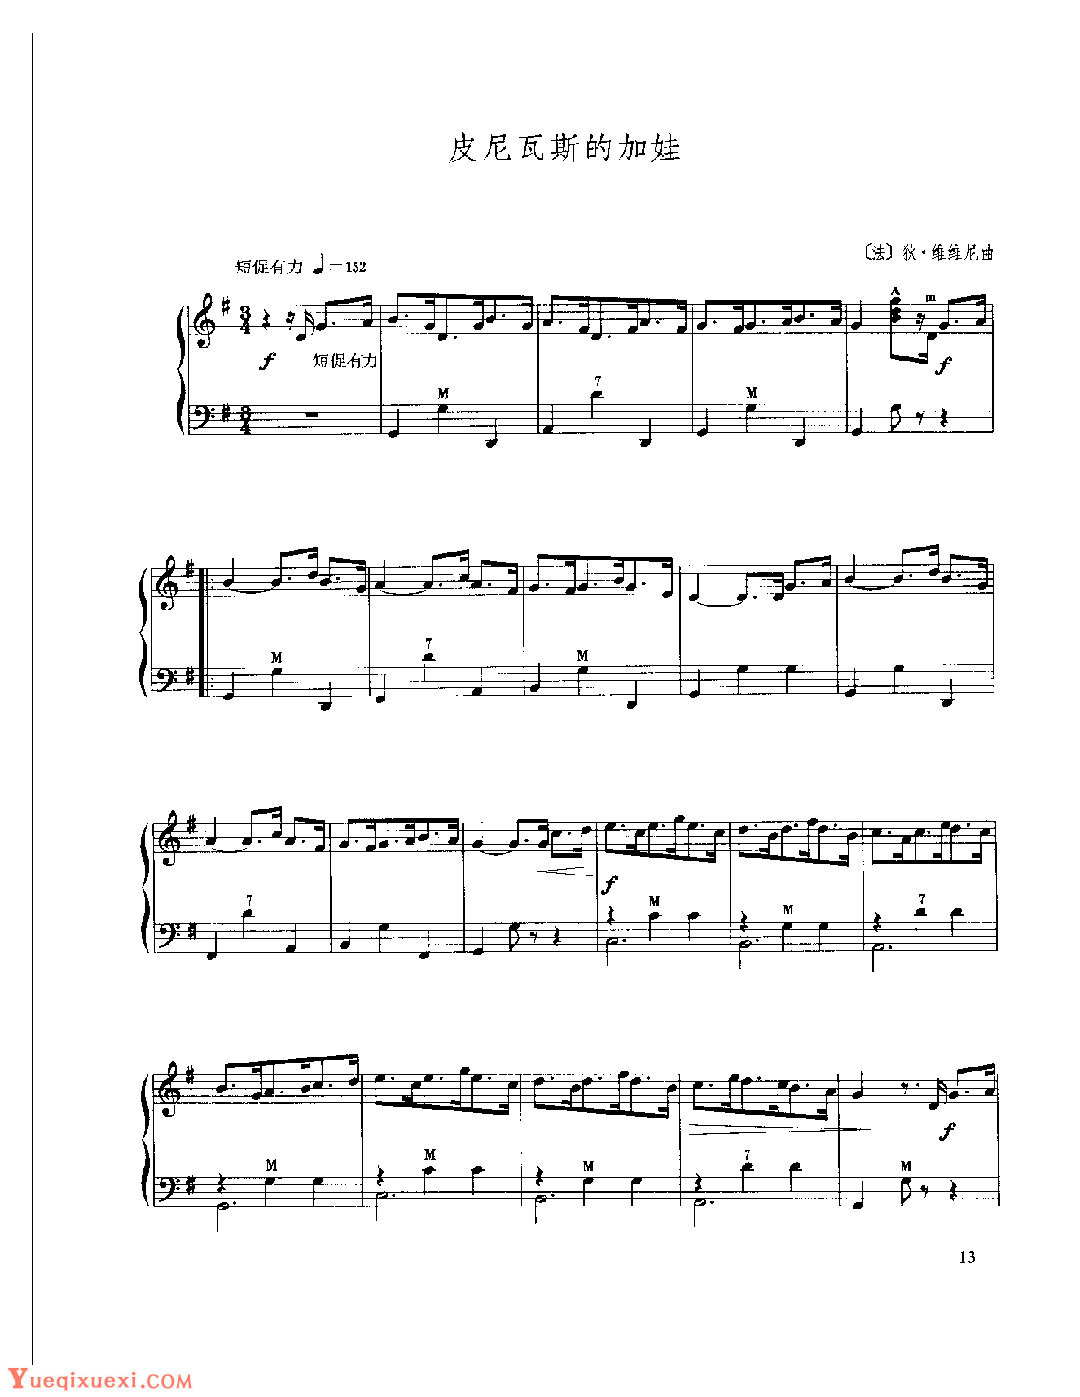 现代手风琴流行乐曲《皮尼瓦斯的加娃》[法]狄·维维尼曲